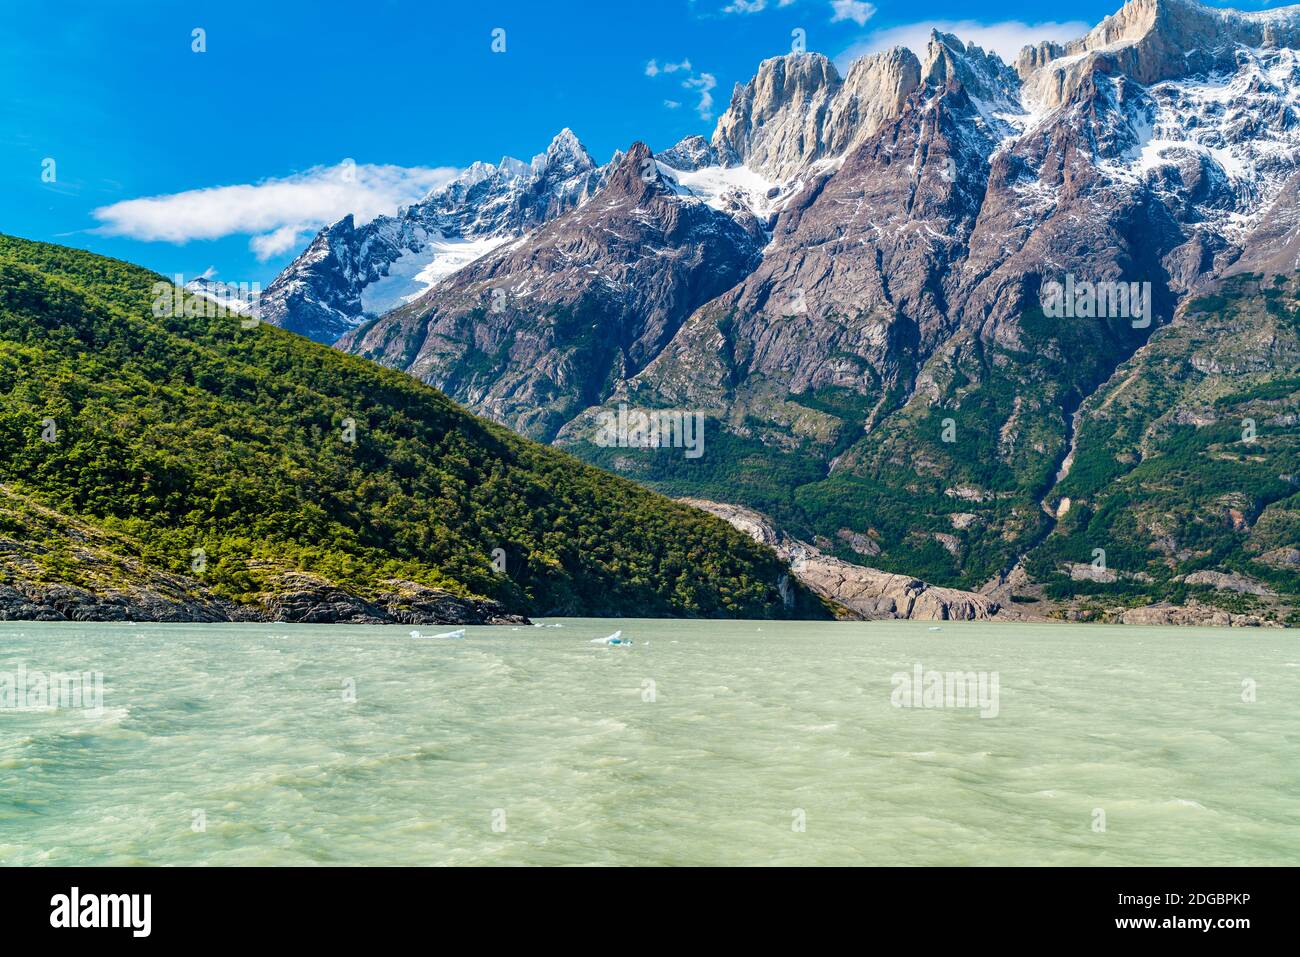 Blick auf den wunderschönen Schnee Berg am Ufer des Sees Grau Stockfoto